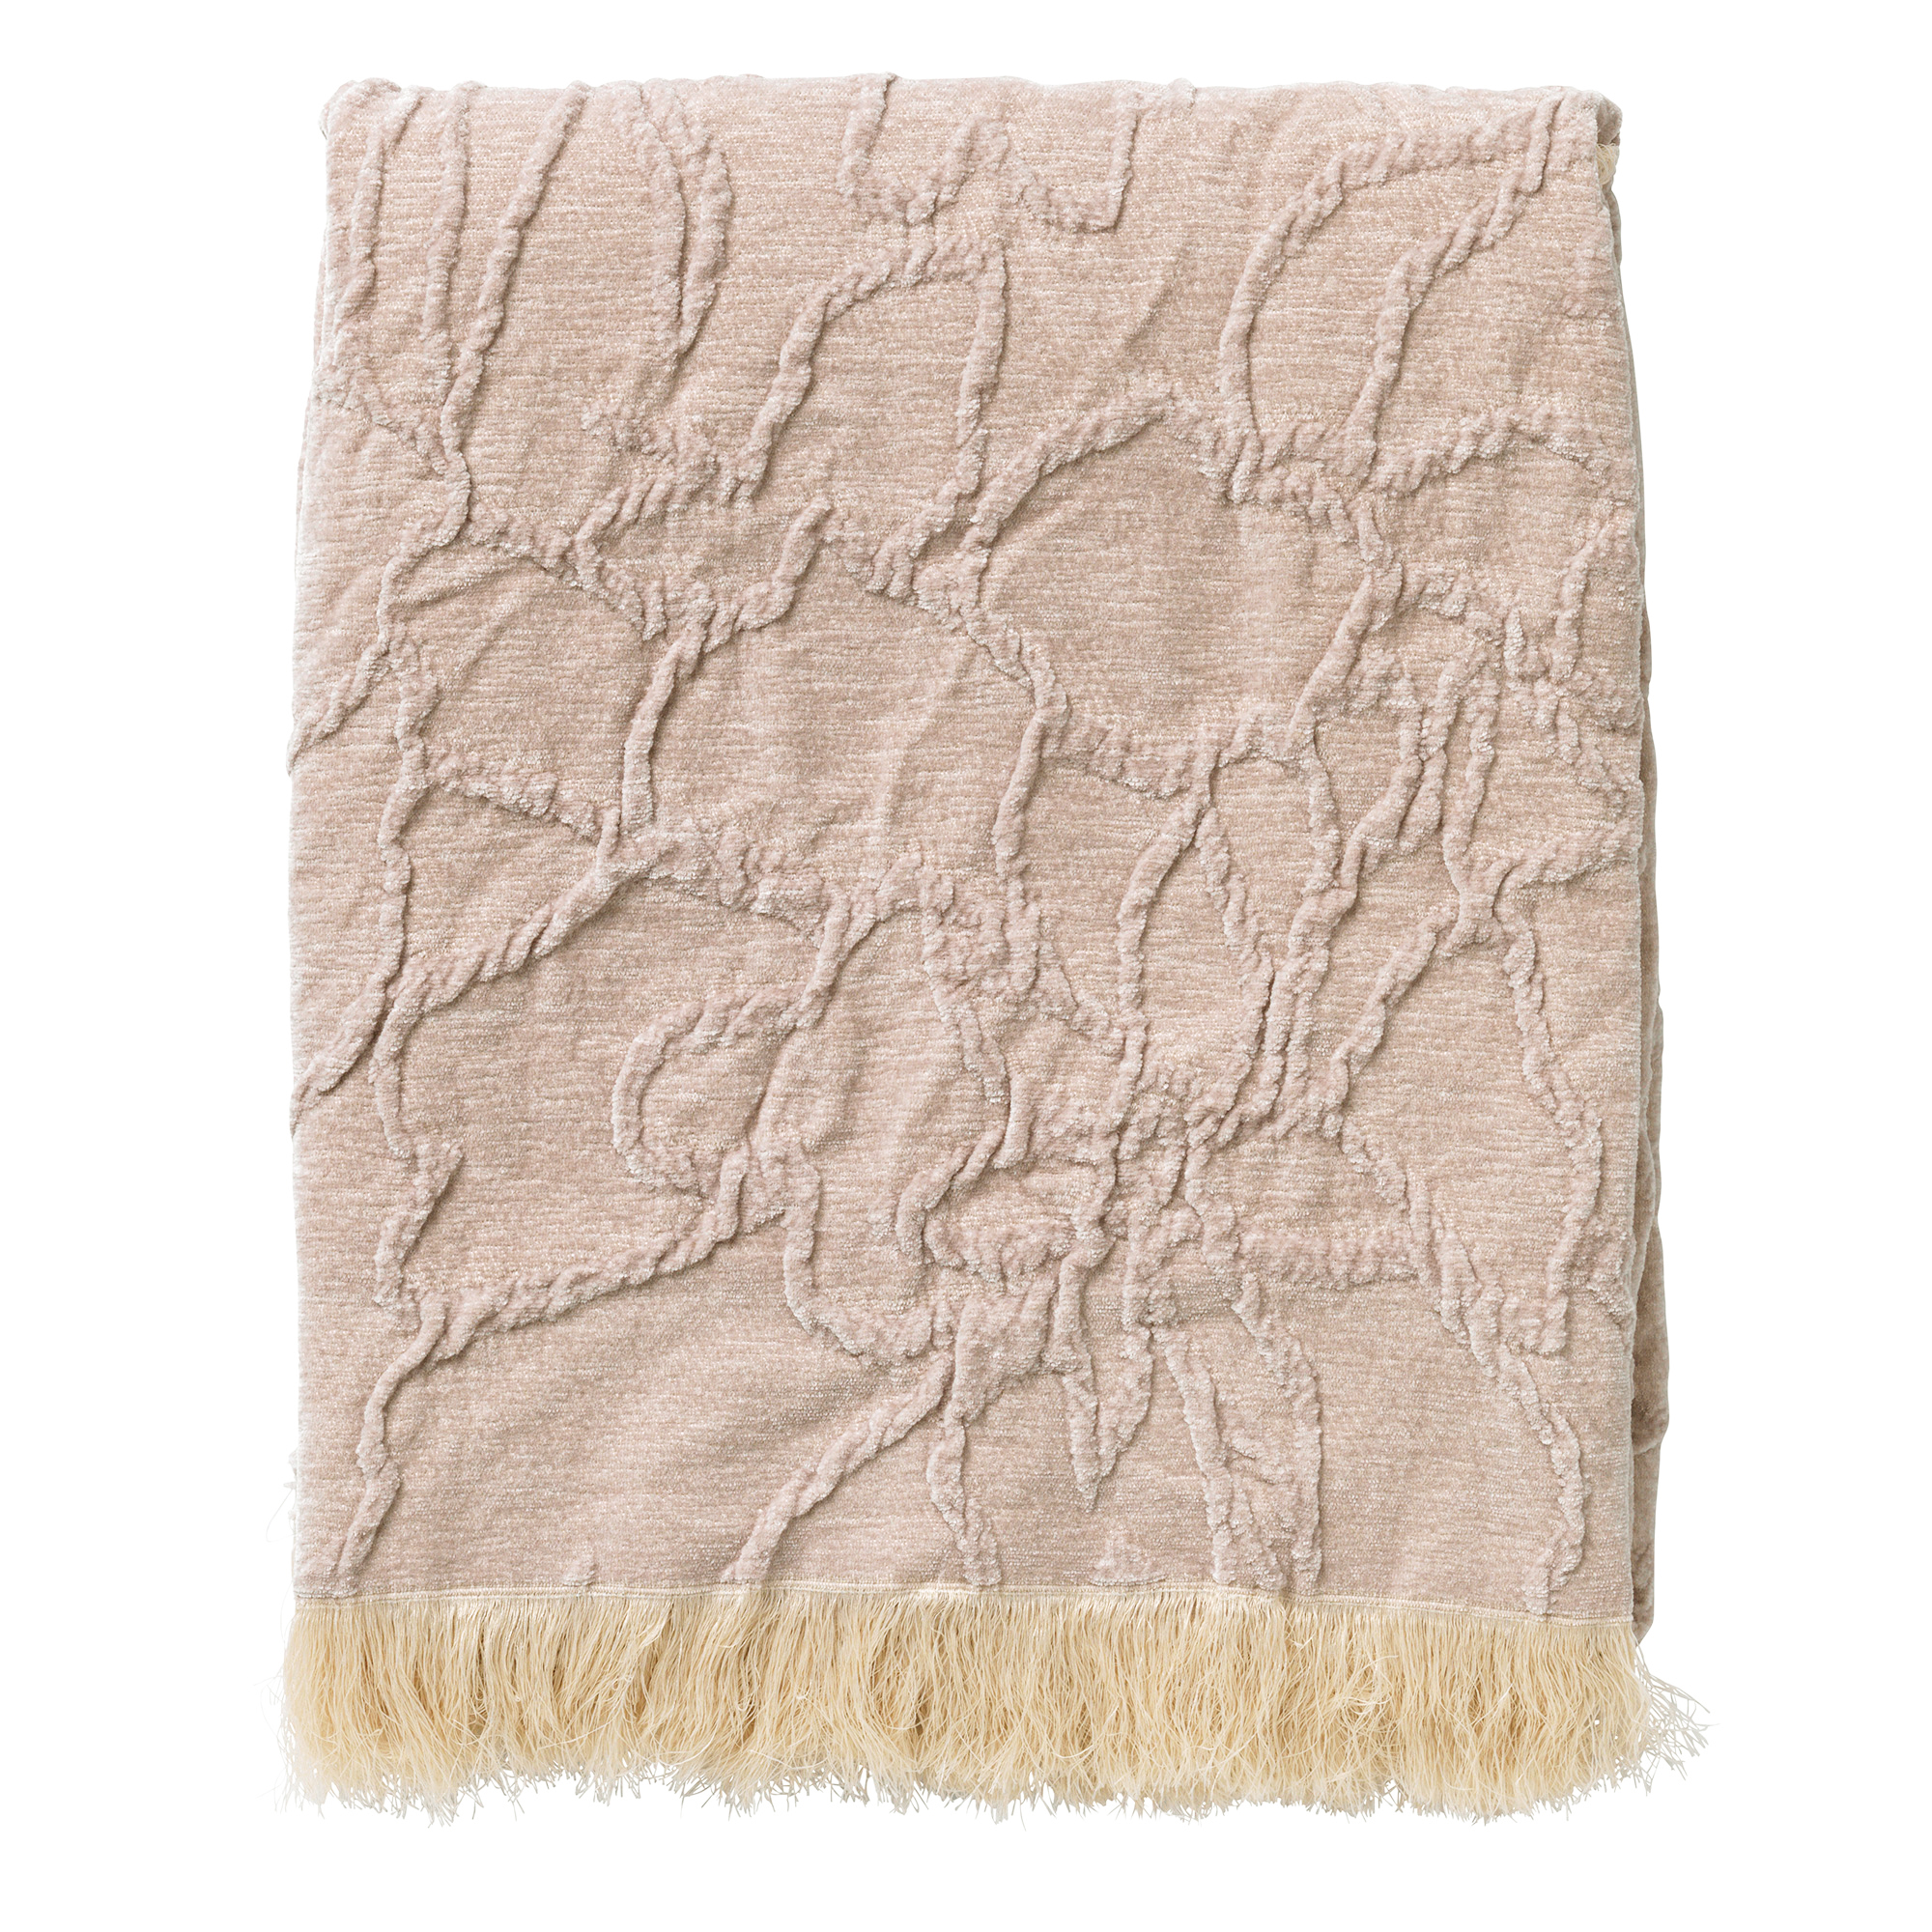 FLORINE - Plaid 140x180 cm - met ingeweven patroon - effen kleur met franjes - Pumice Stone - beige